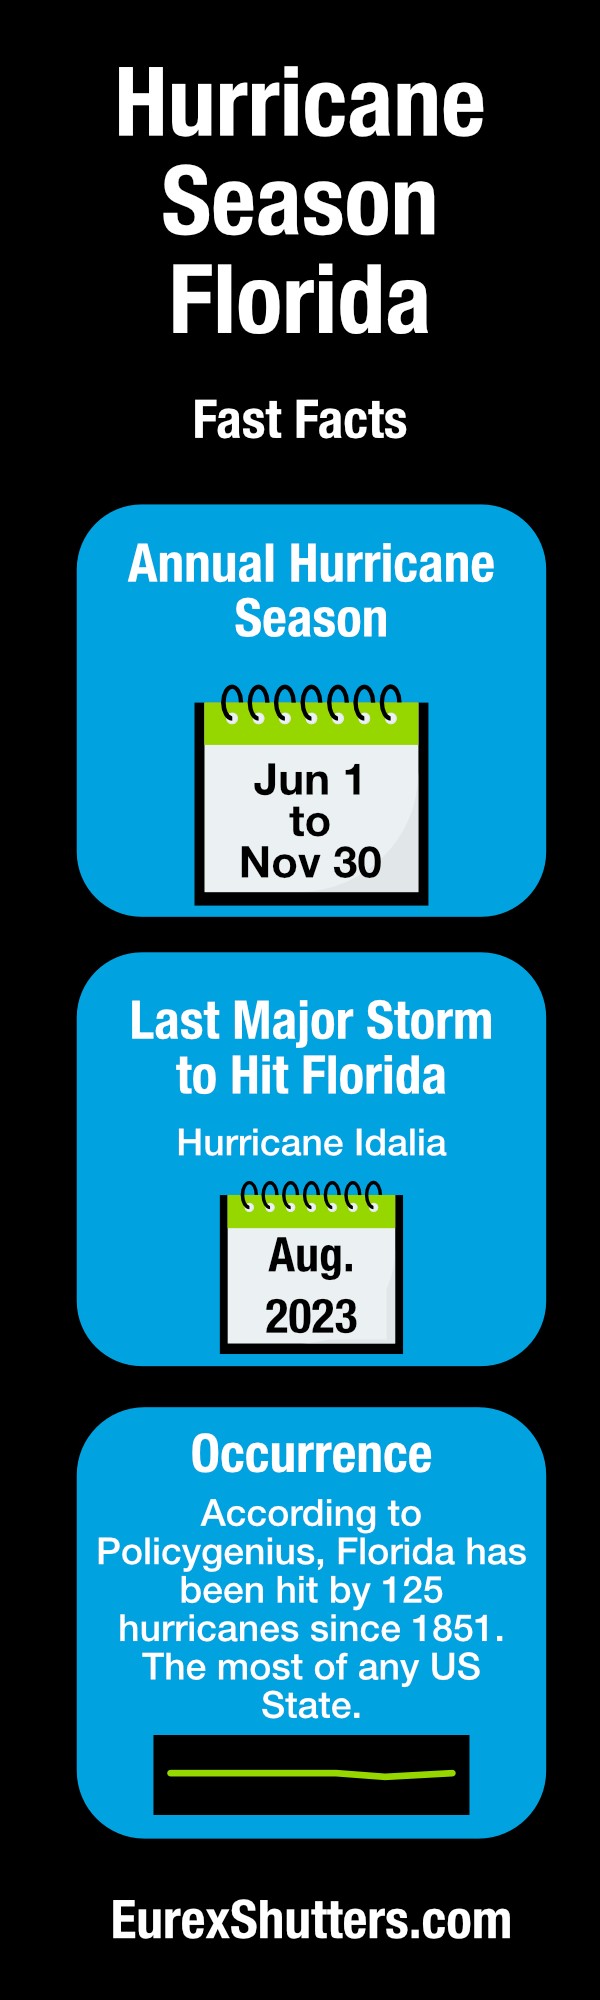 Florida's Hot Season - Florida Climate Center